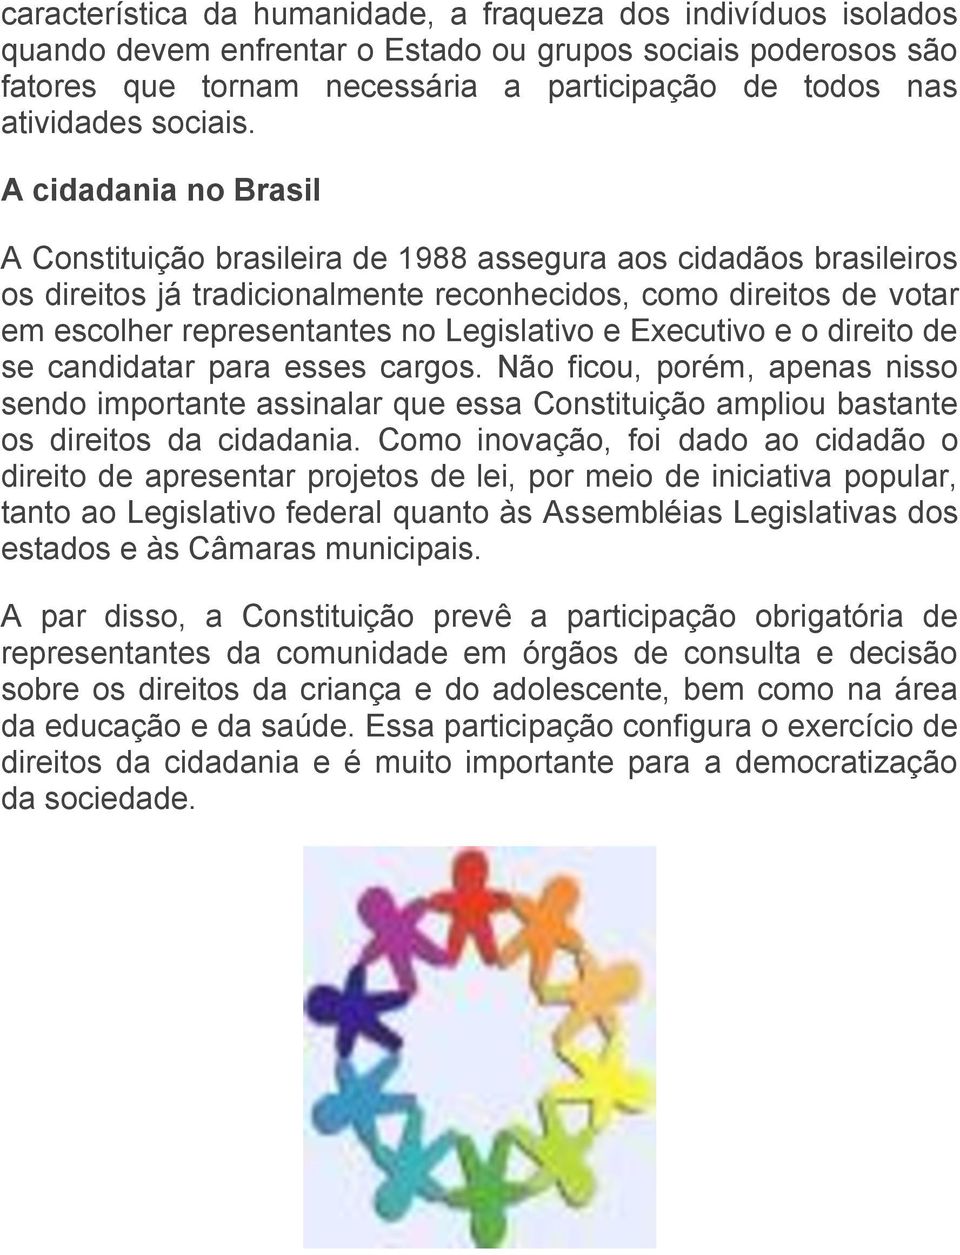 A cidadania no Brasil A Constituição brasileira de 1988 assegura aos cidadãos brasileiros os direitos já tradicionalmente reconhecidos, como direitos de votar em escolher representantes no